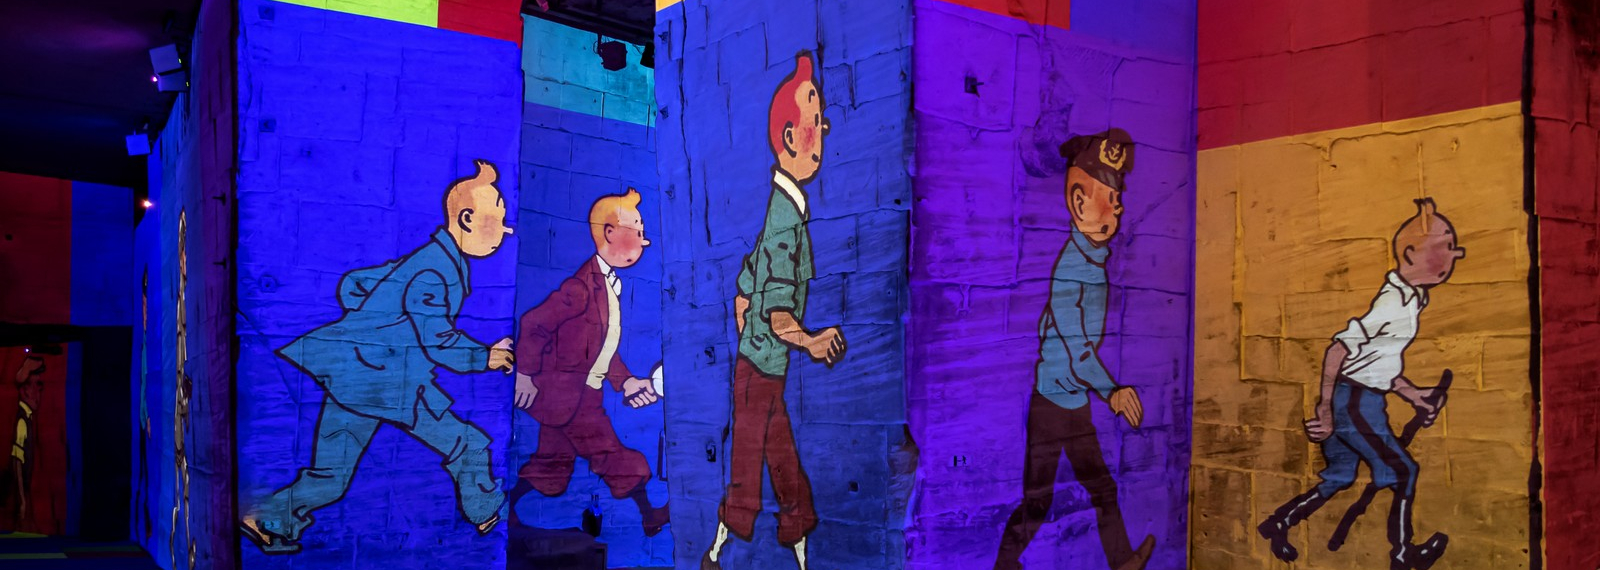 Tintin, the immersive adventure